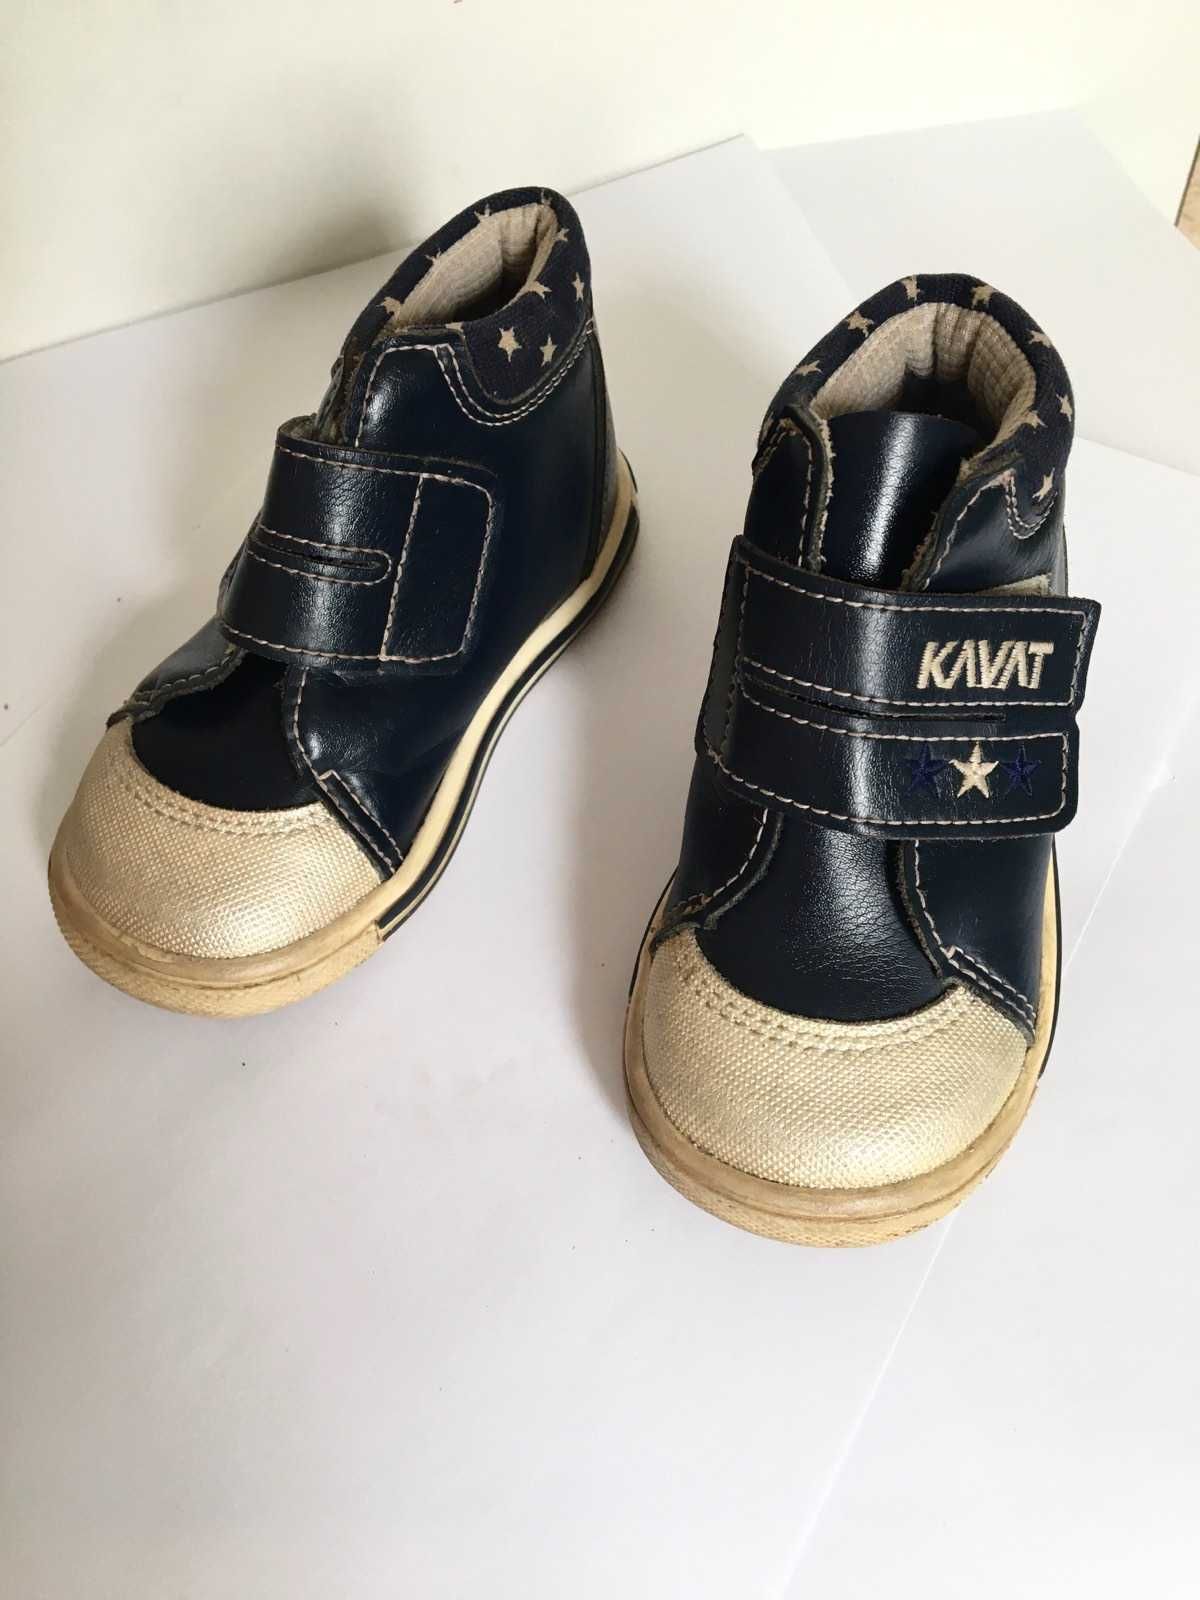 Туфли ботинки кожанные Kavat  р. 22 (14 см по стельке)